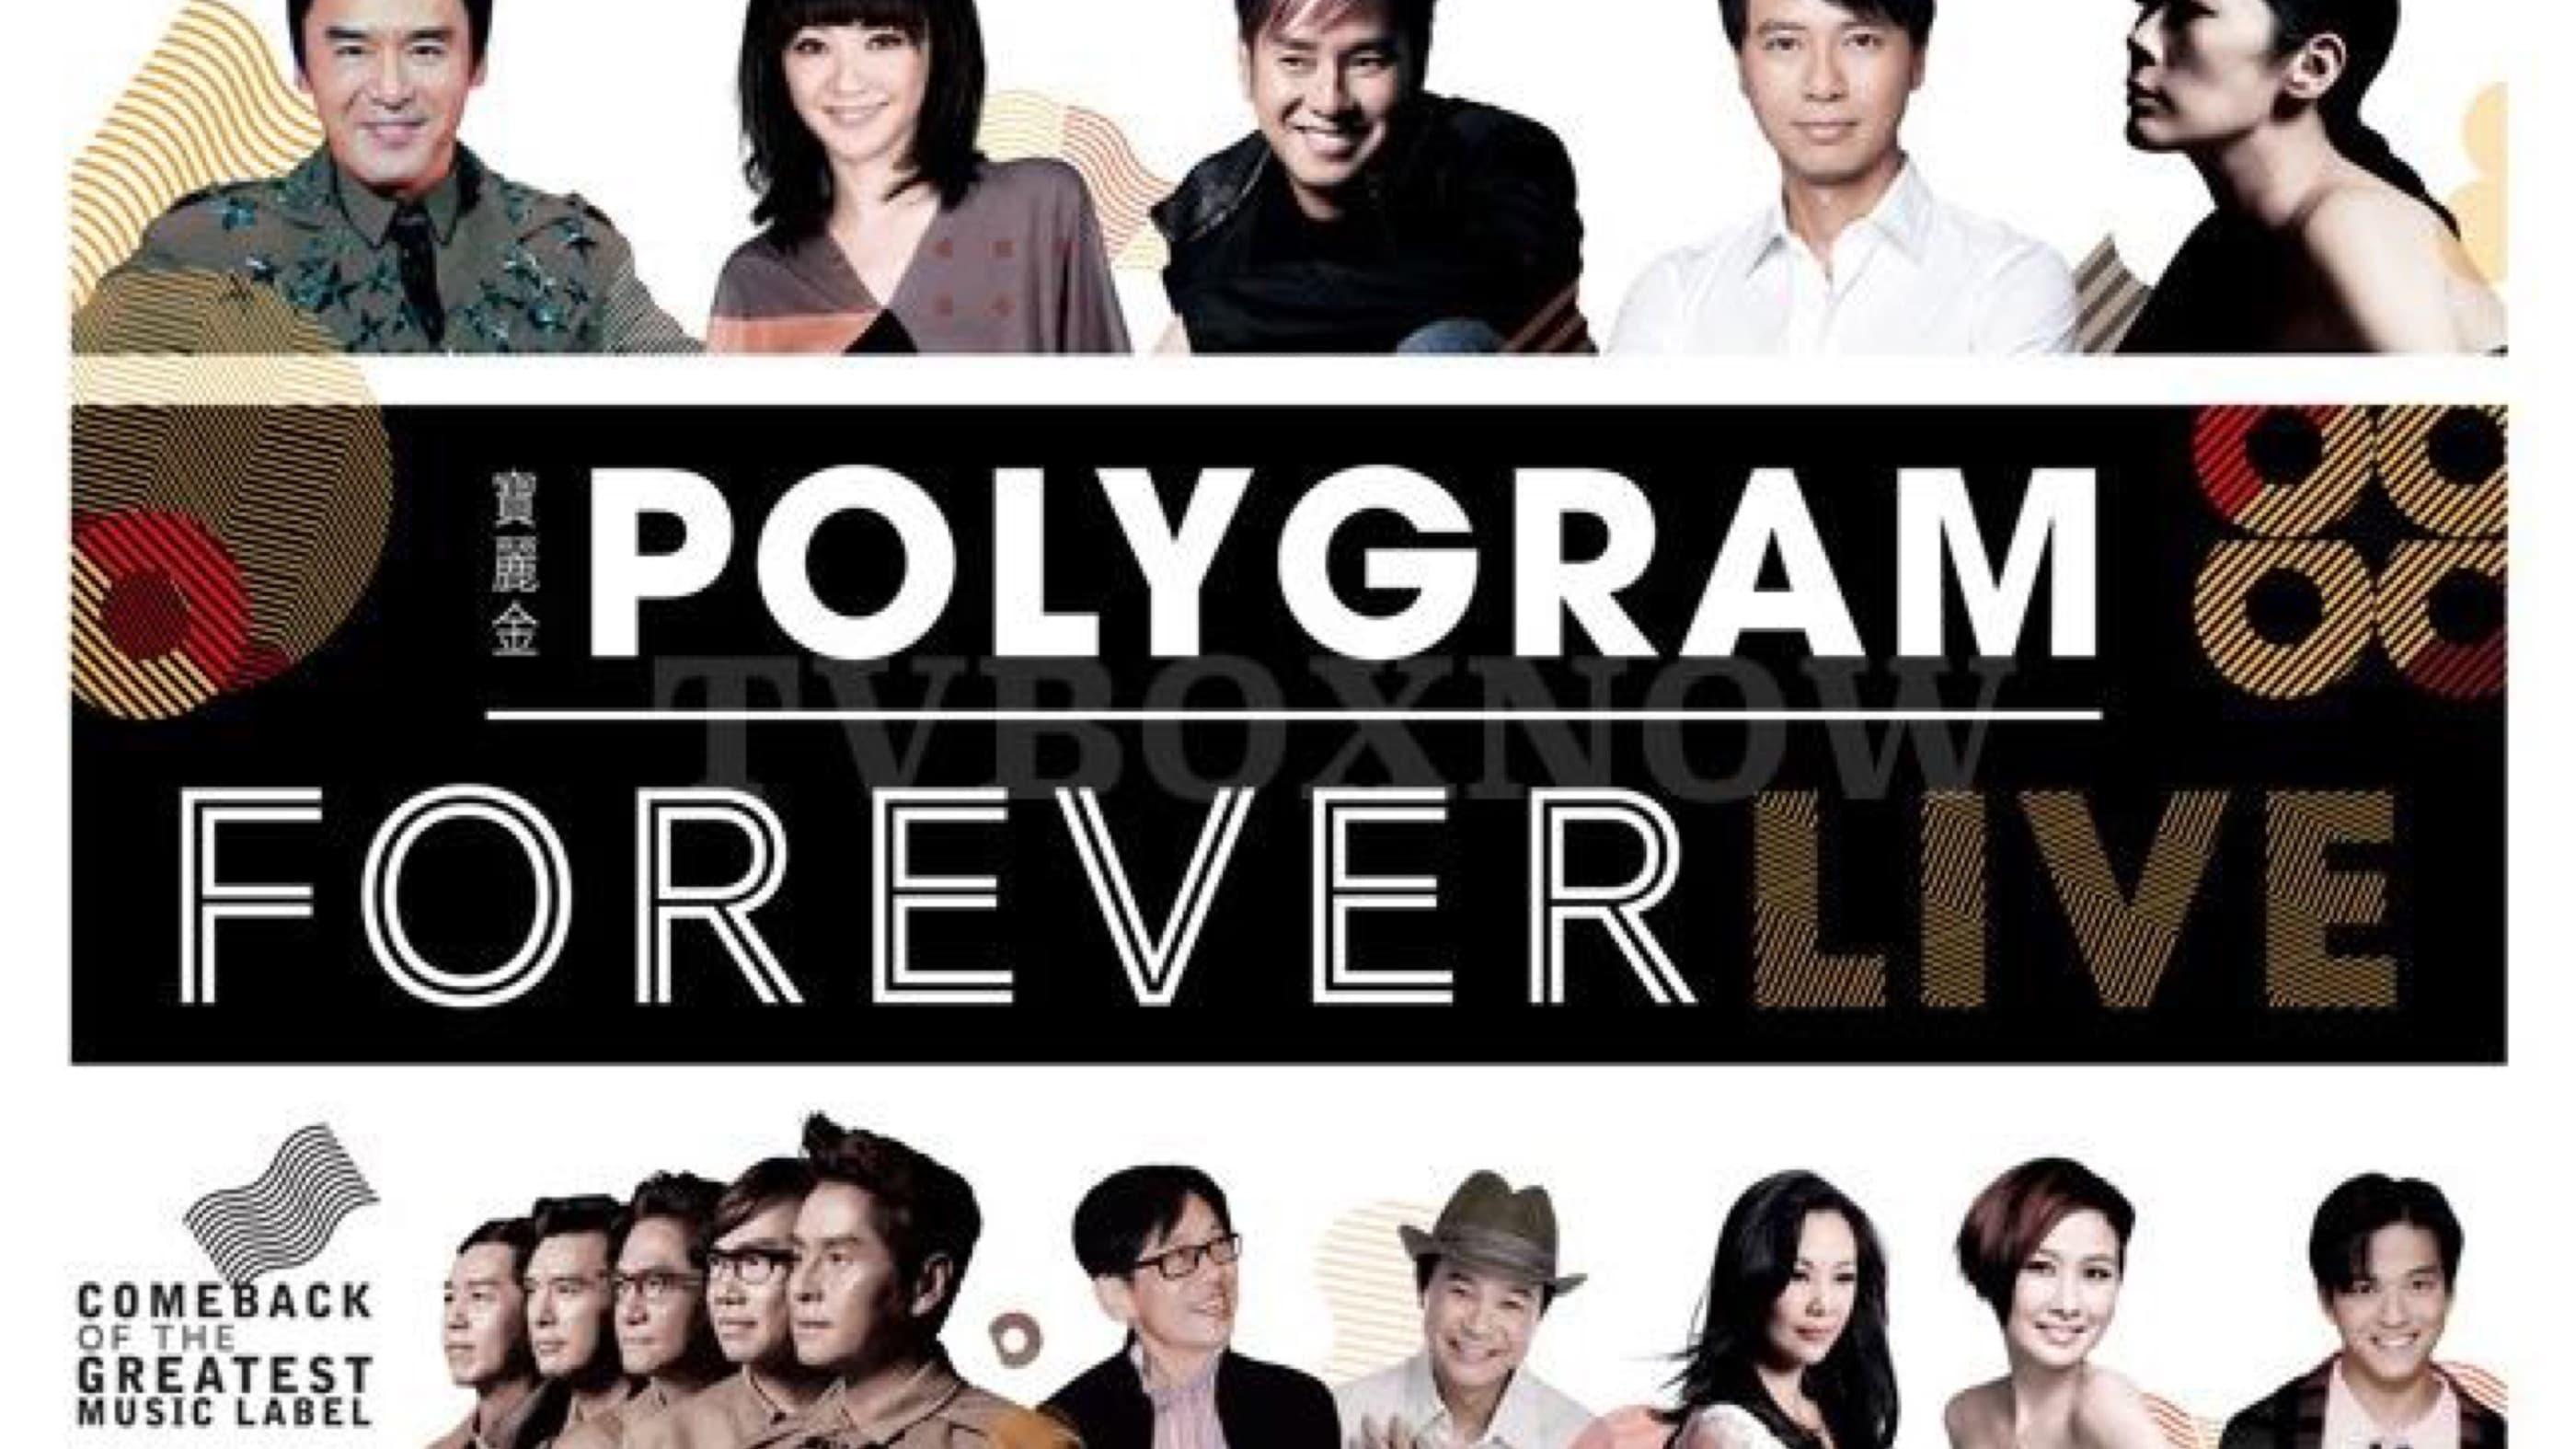 PolyGram Forever Live backdrop